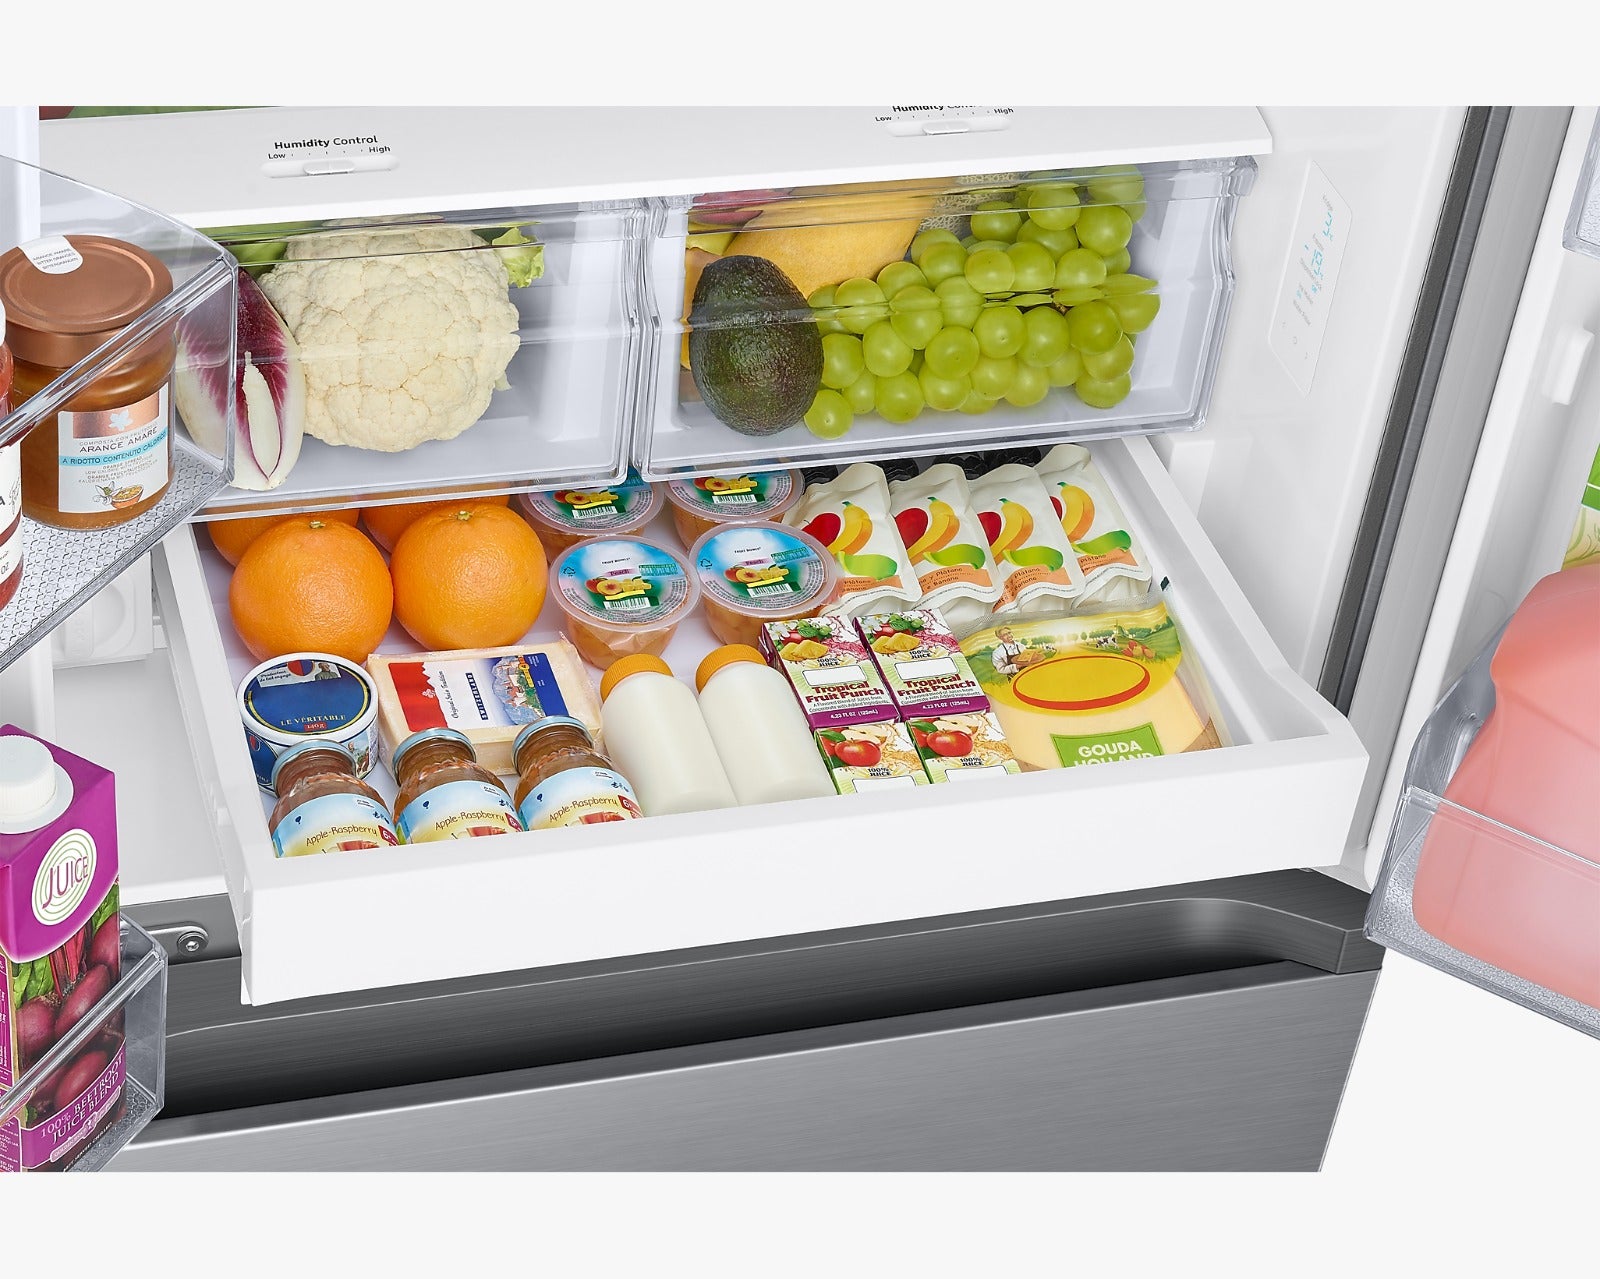 Qué características debe tener una refrigeradora ideal? – Samsung Newsroom  Perú